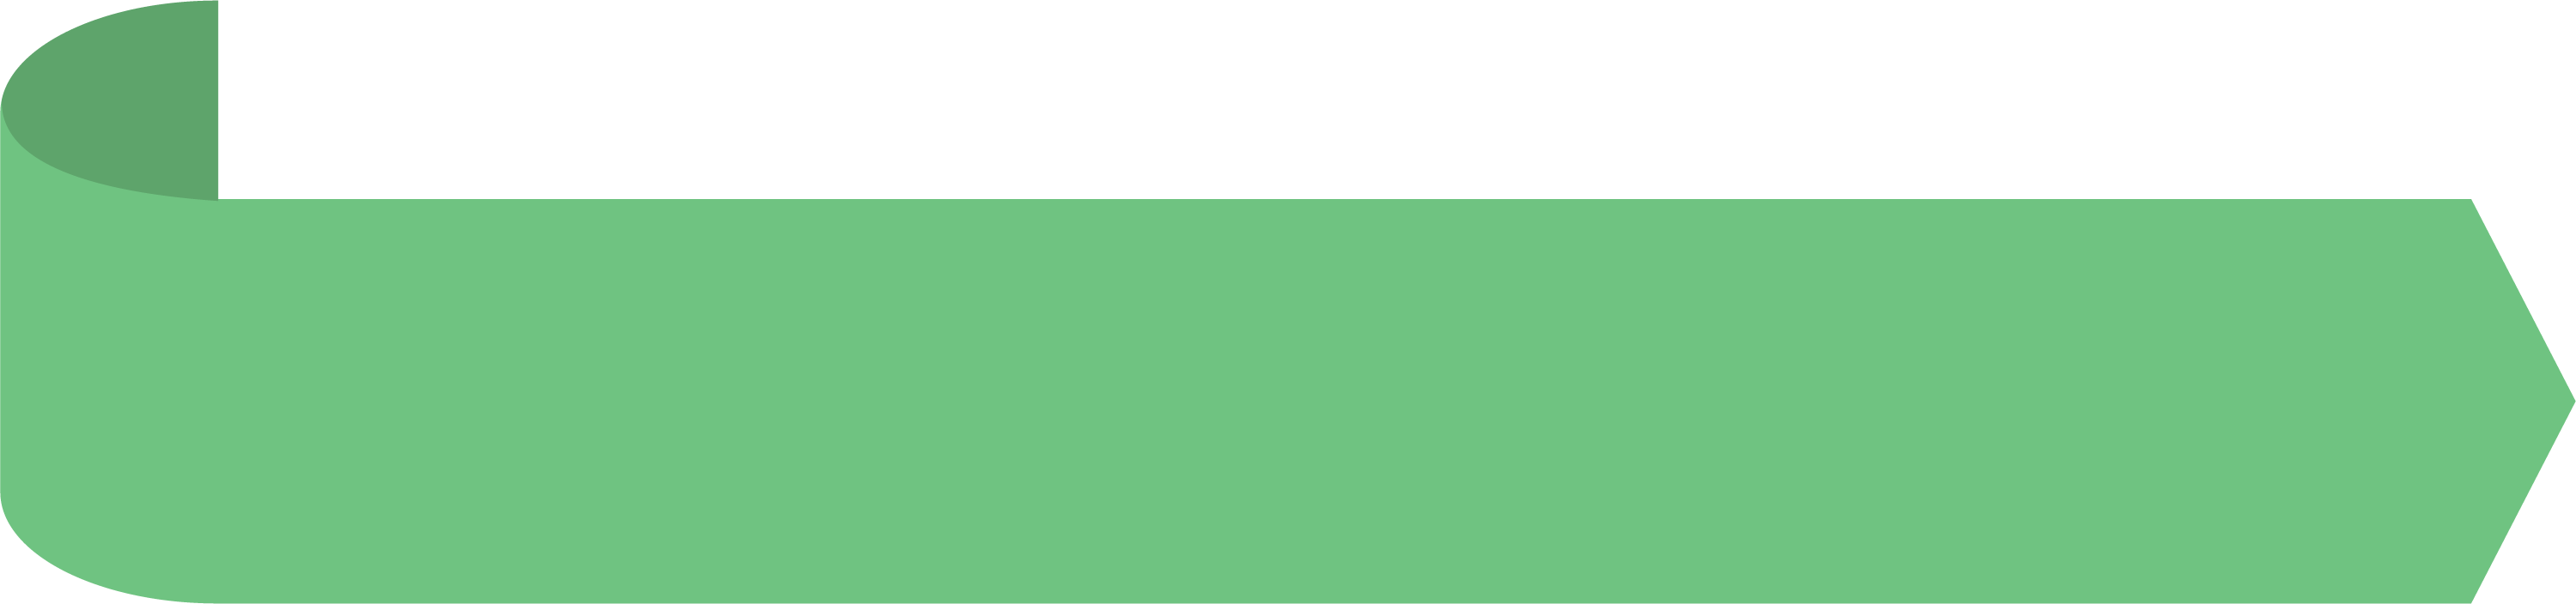 Зеленая полоска. Салатовая полоска. Полоска зеленая на прозрачном фоне. Полоса зеленого цвета. Зеленая прямая линия